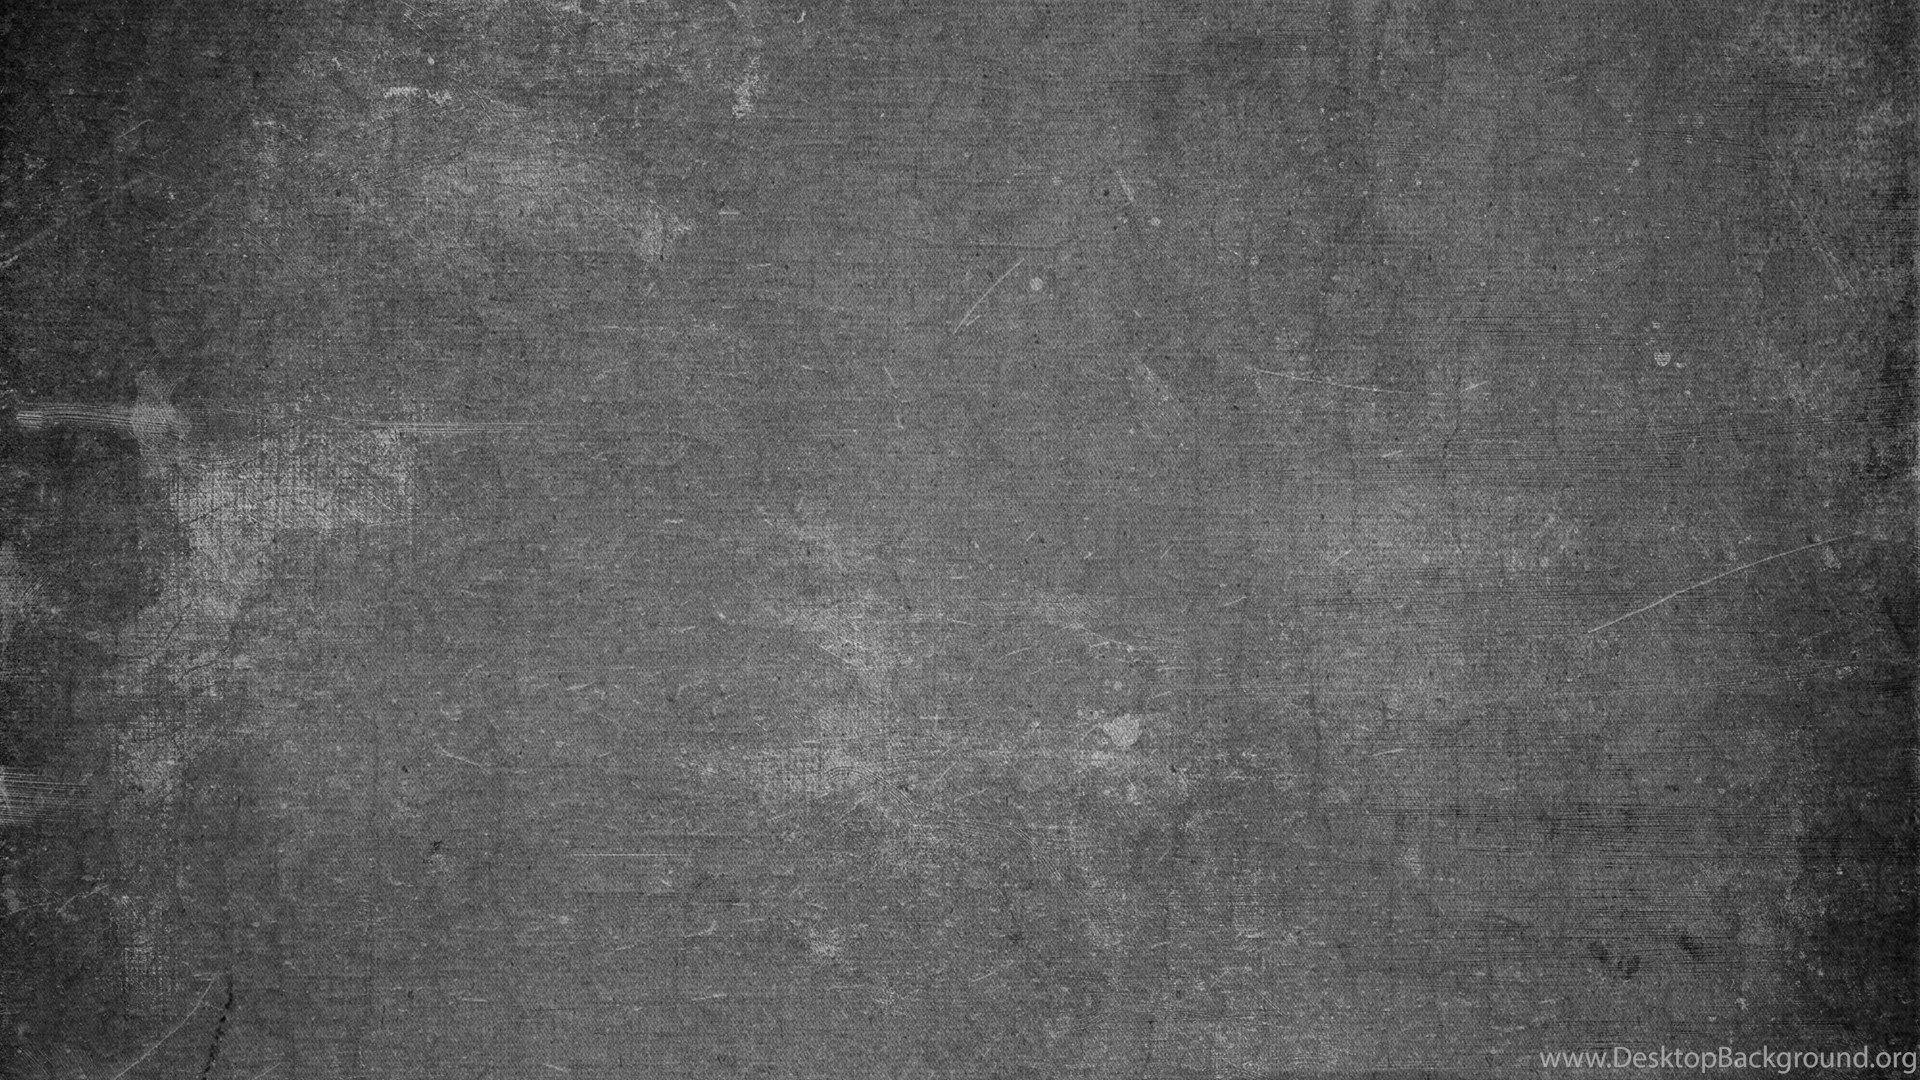 1920x1080 Bảng đen Hình nền Bảng đen Độc đáo Nền Bảng đen Kriya Năm nay